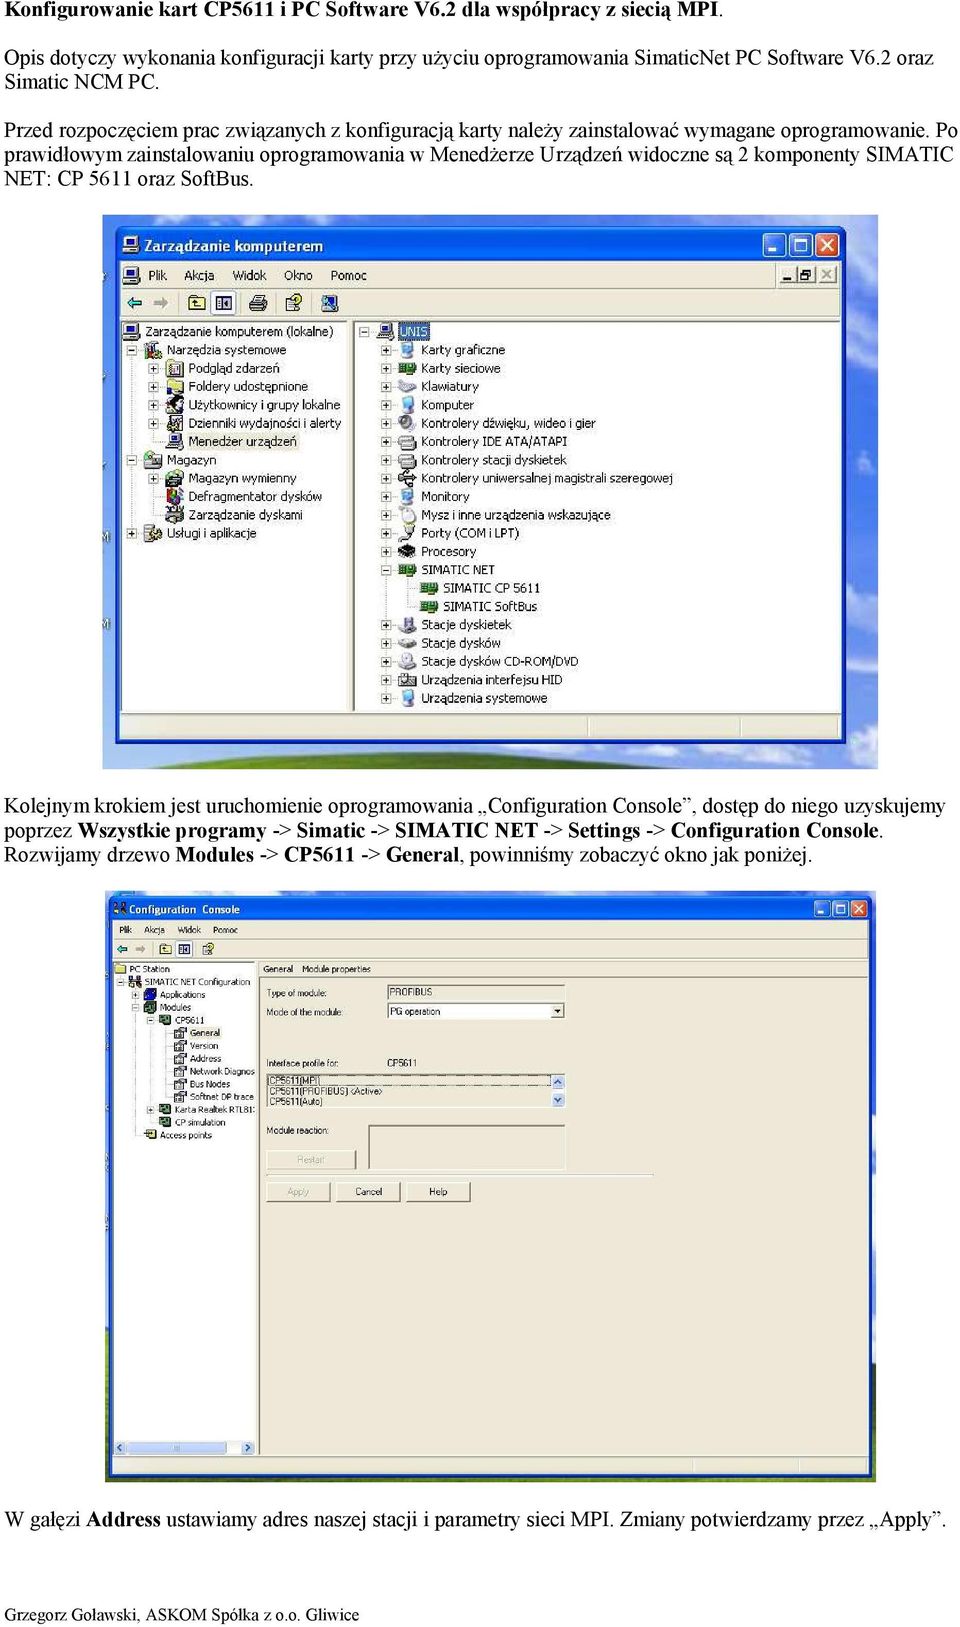 Po prawidłowym zainstalowaniu oprogramowania w Menedżerze Urządzeń widoczne są 2 komponenty SIMATIC NET: CP 5611 oraz SoftBus.